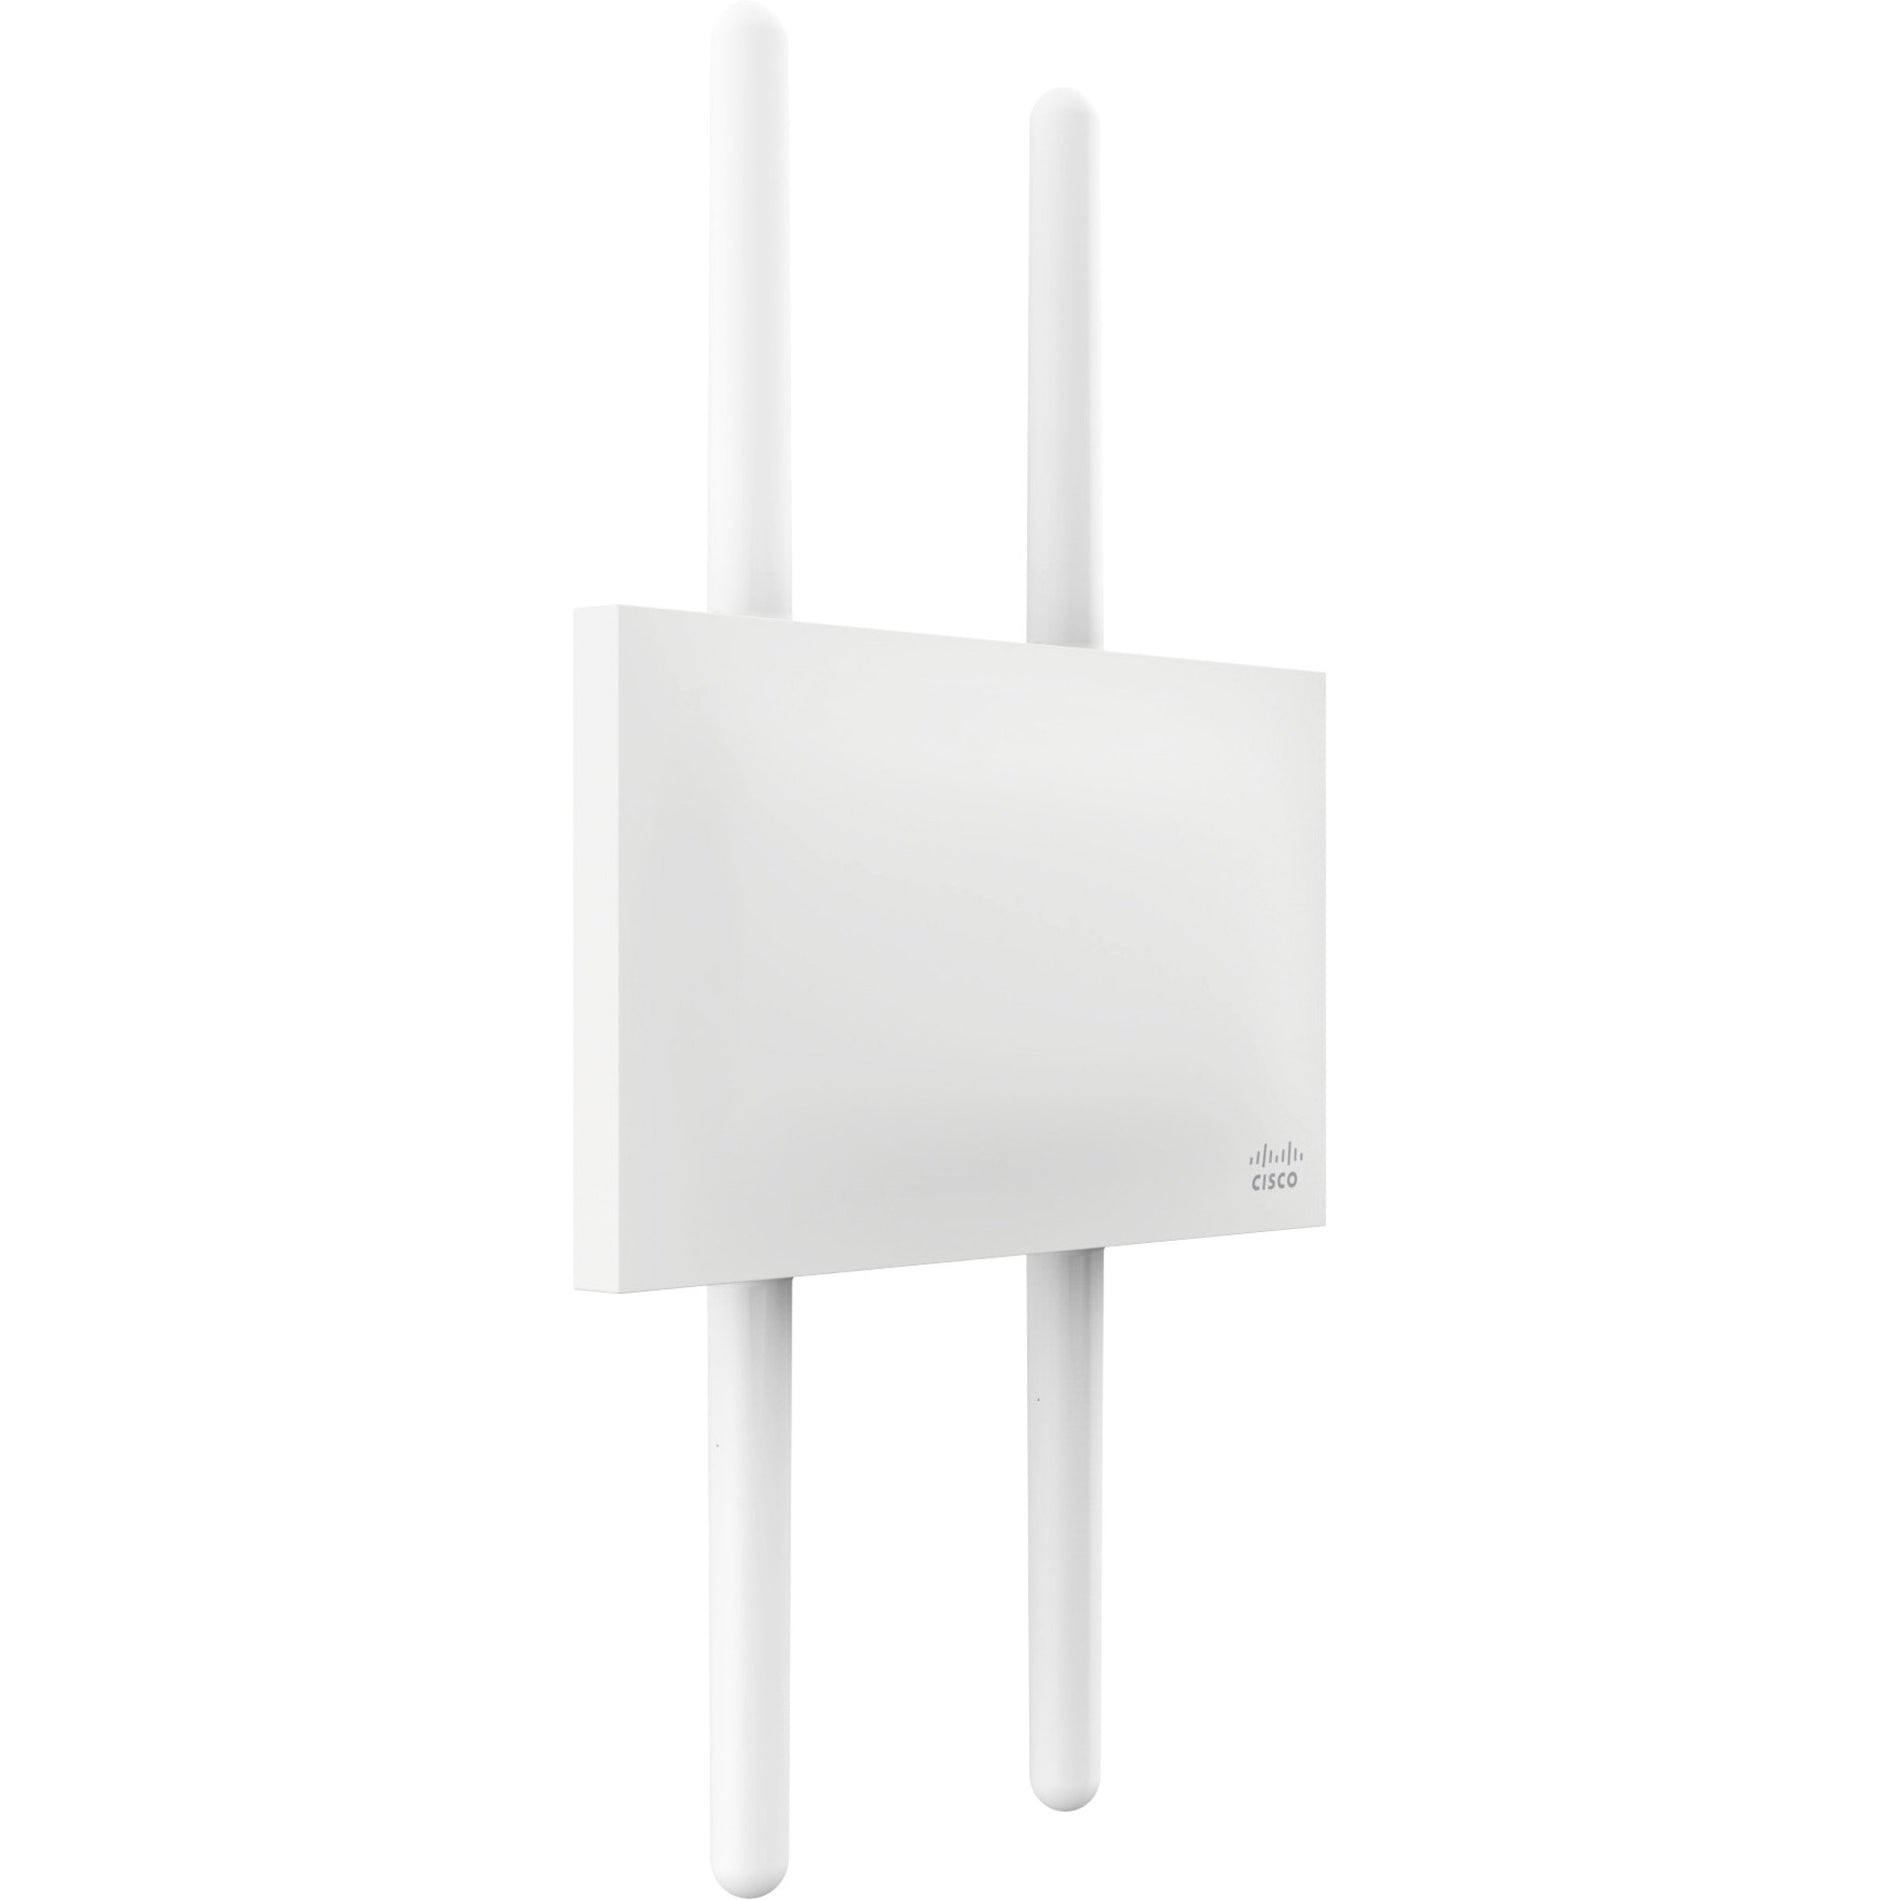 Meraki MR74 IEEE 802.11ac 1.30 Gbit/s Wireless Access Point (MR74-HW)